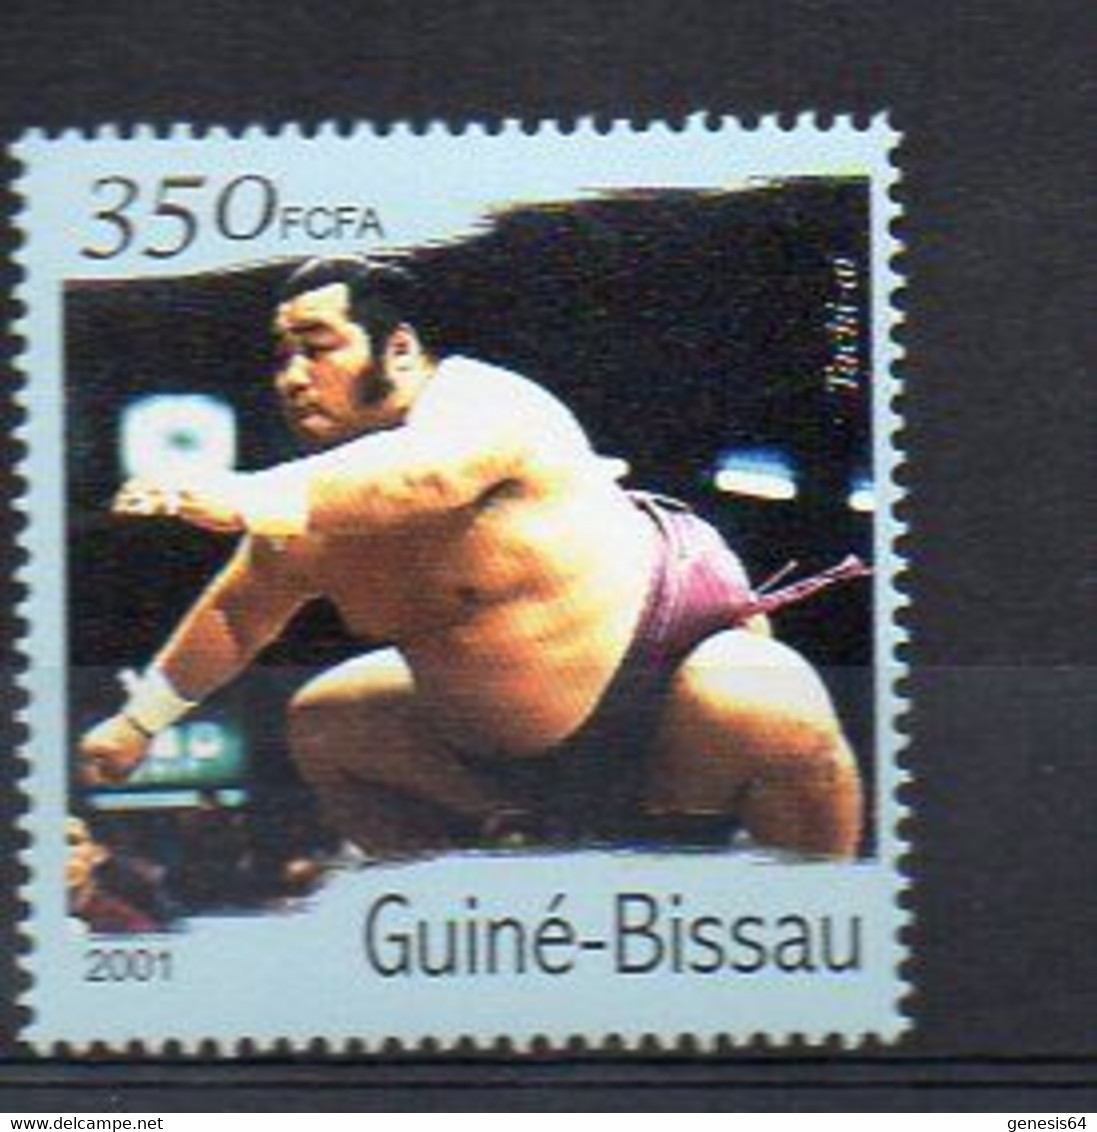 Sumo - (Guinea Bissau) MNH (2W2984) - Non Classificati